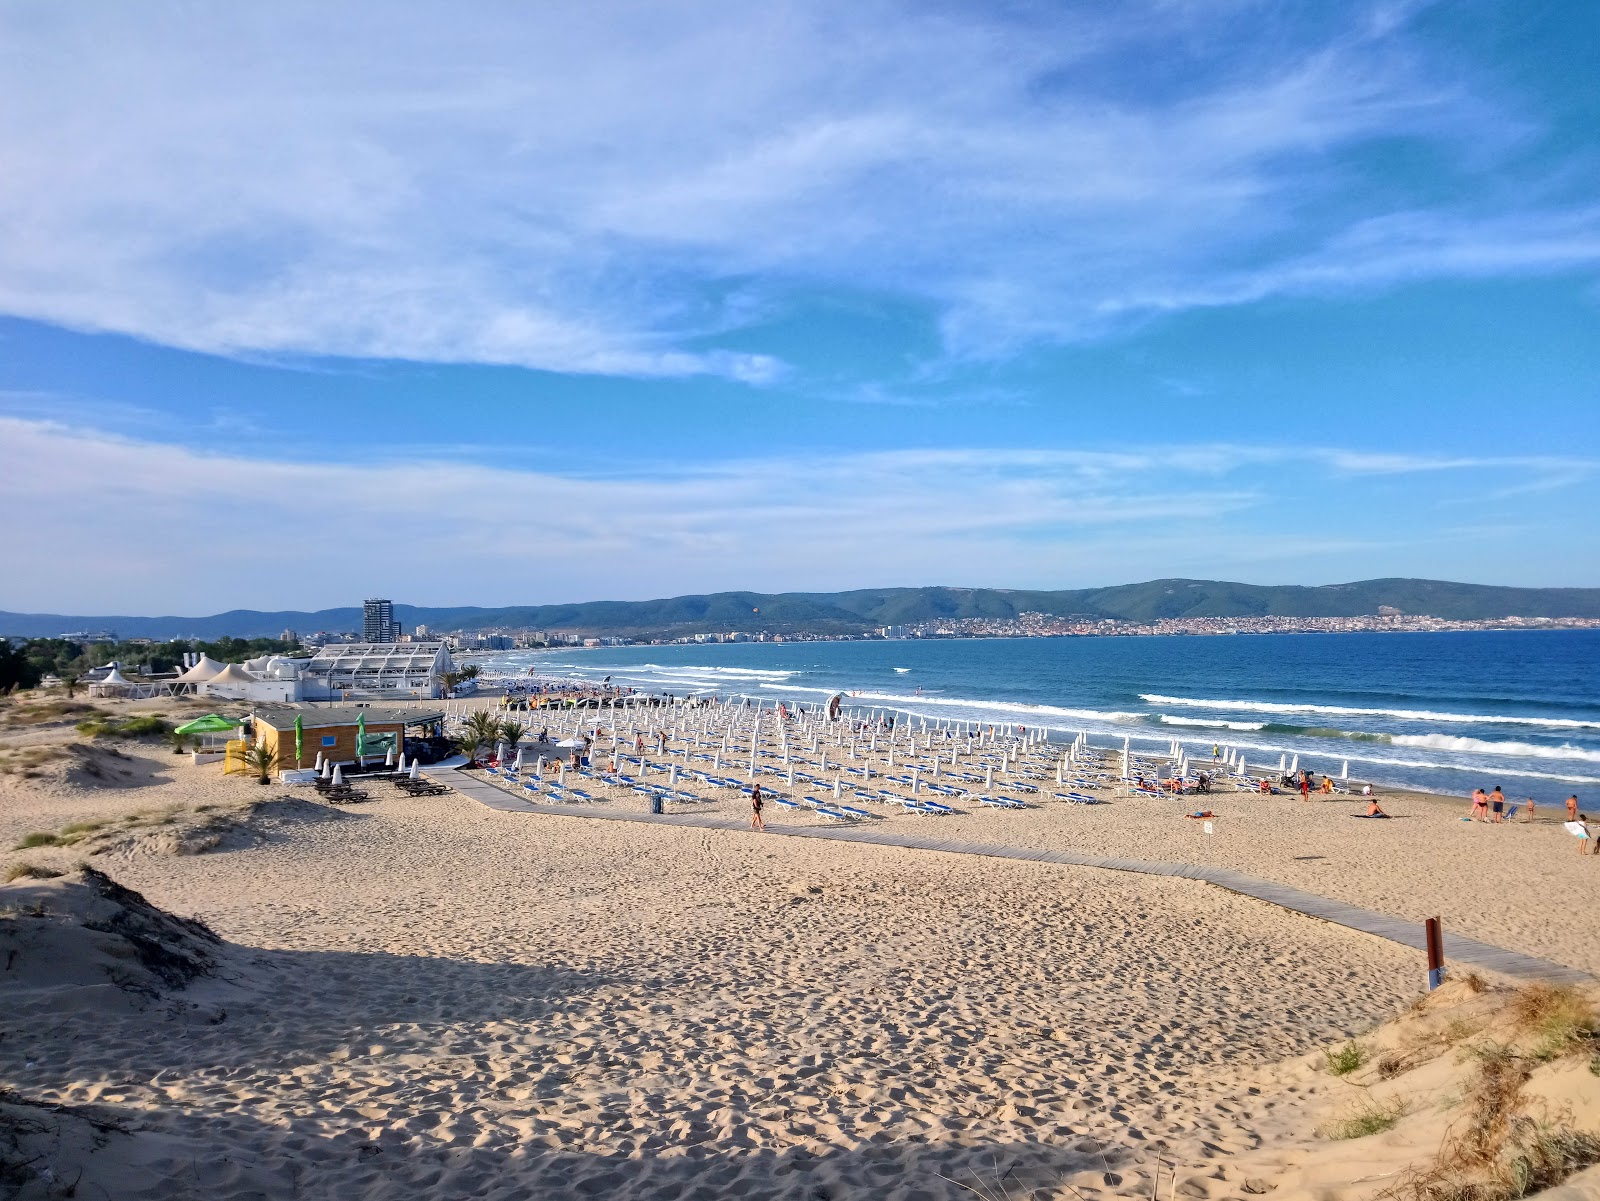 Foto de Sunny nude beach - recomendado para viajantes em família com crianças